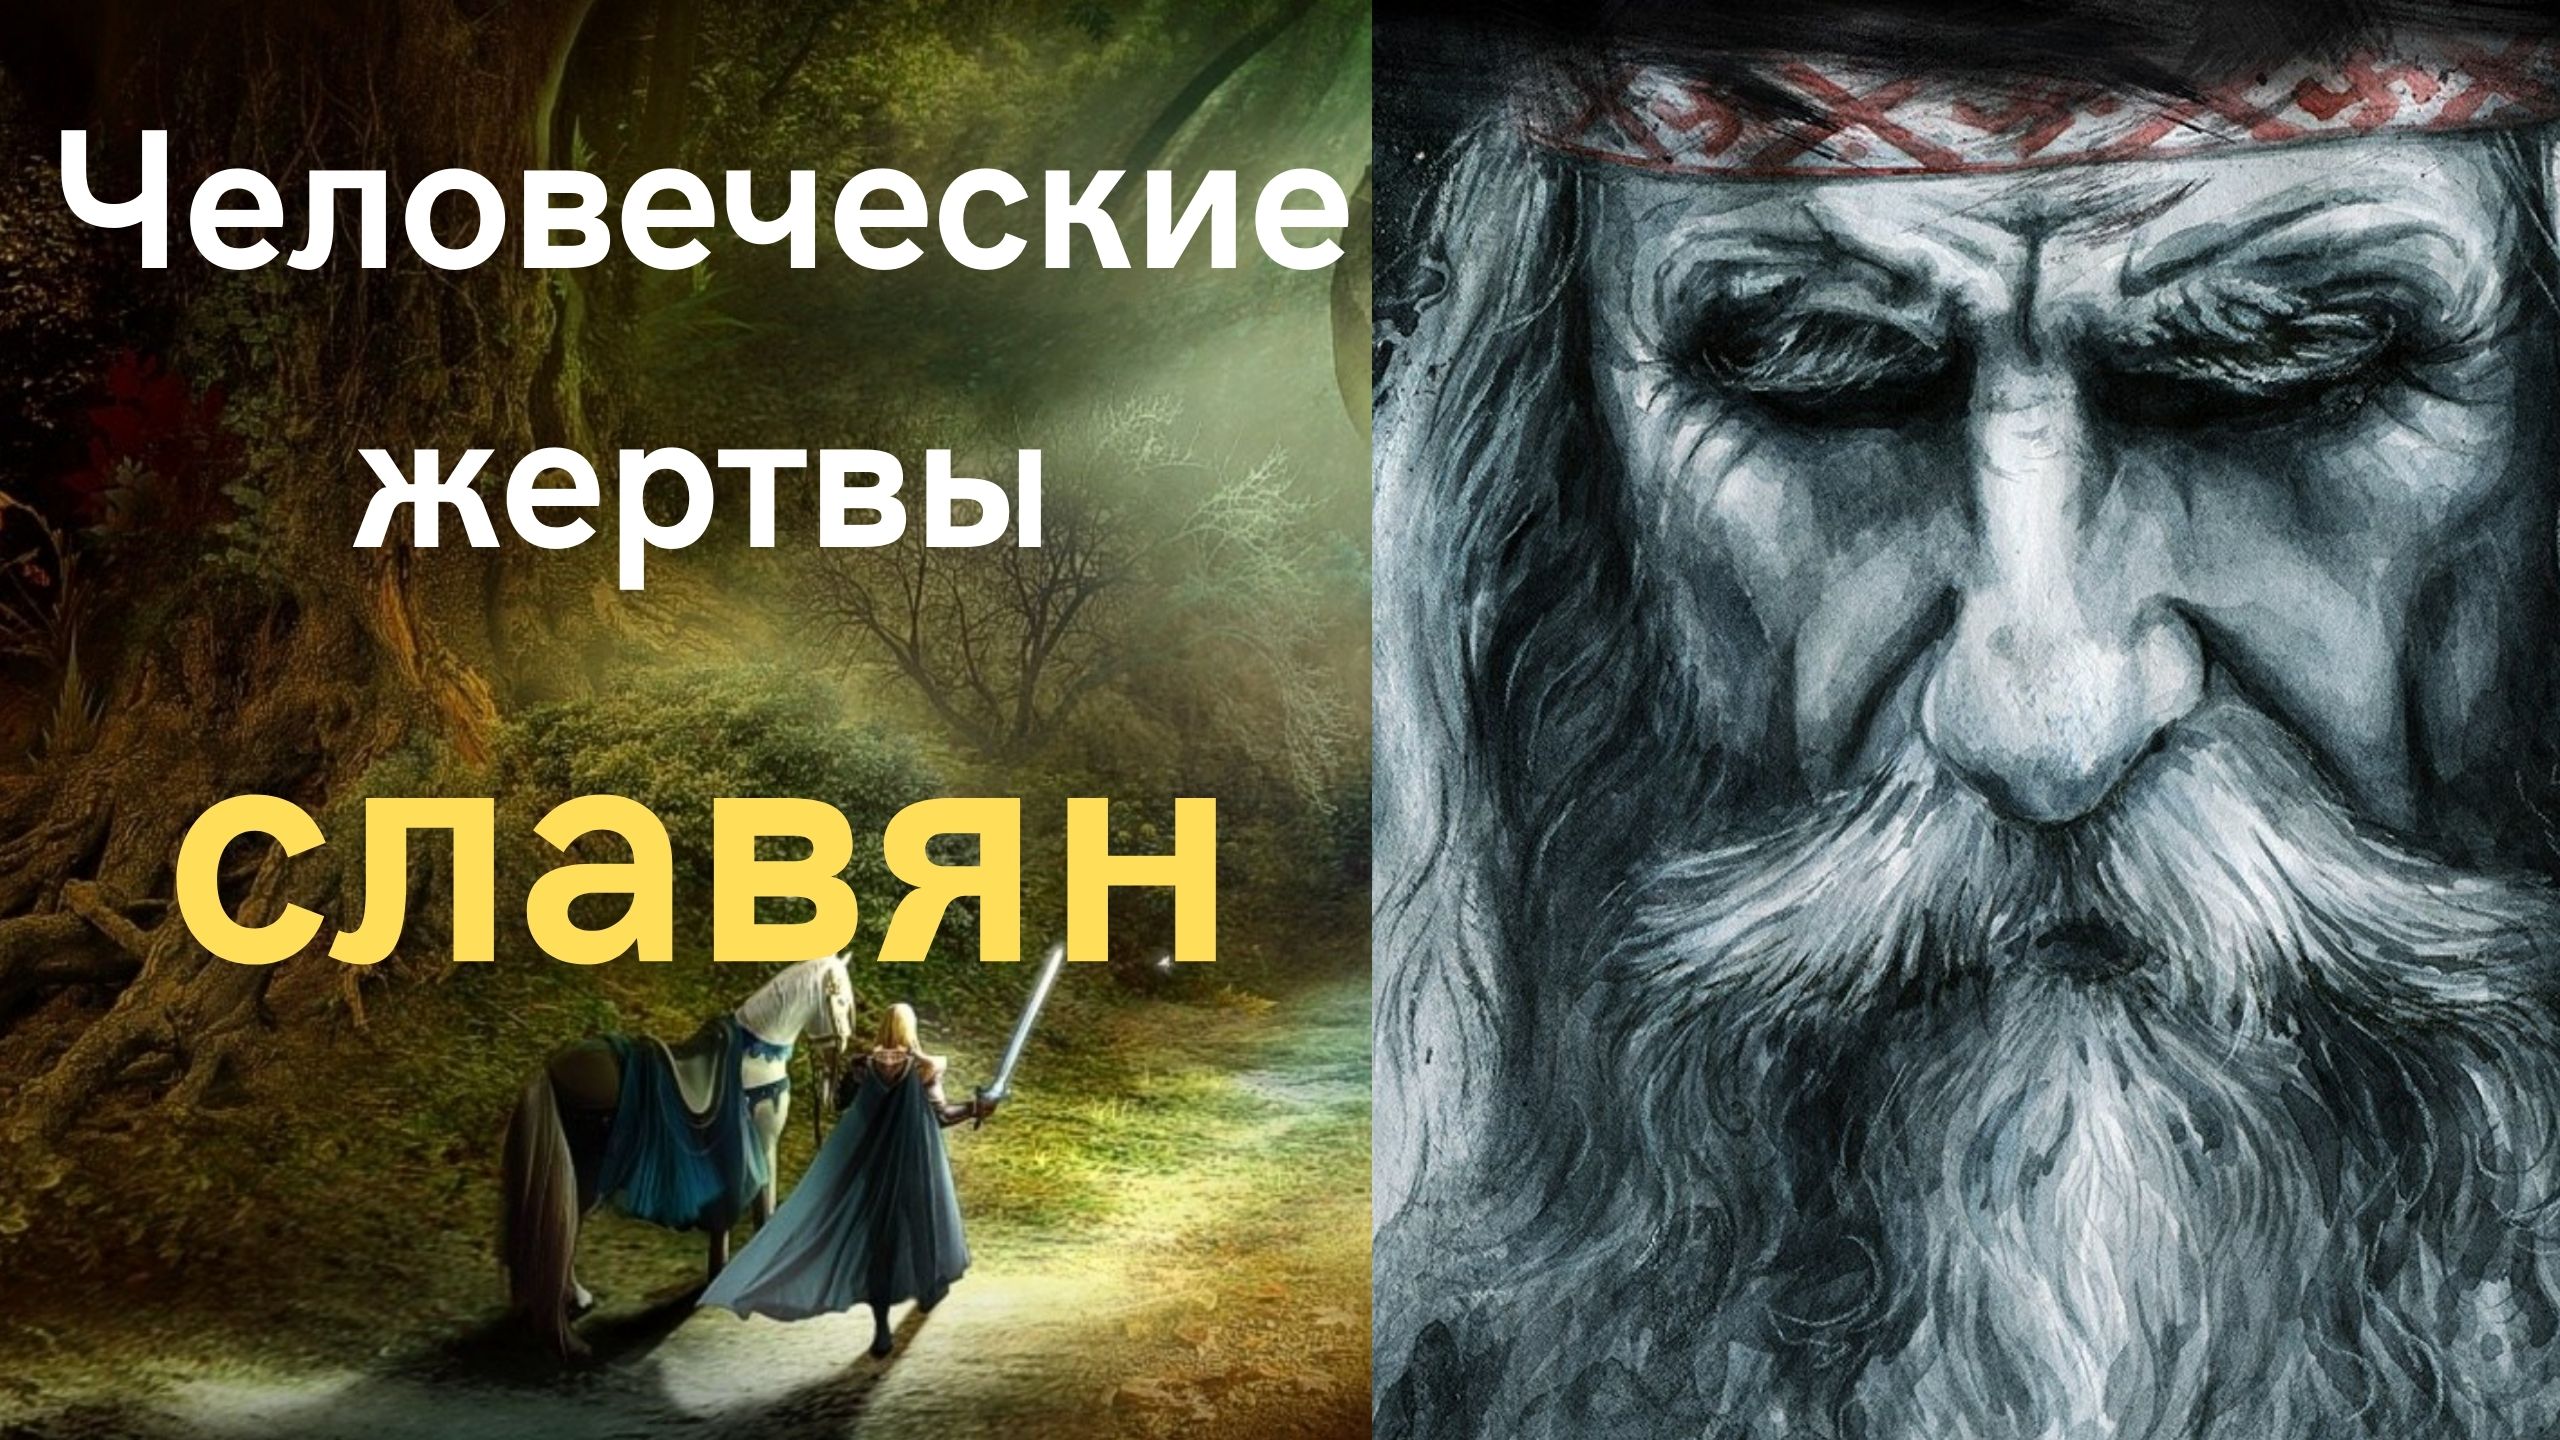 Человеческие жертвоприношения у восточных славян: правда или наглая ложь?